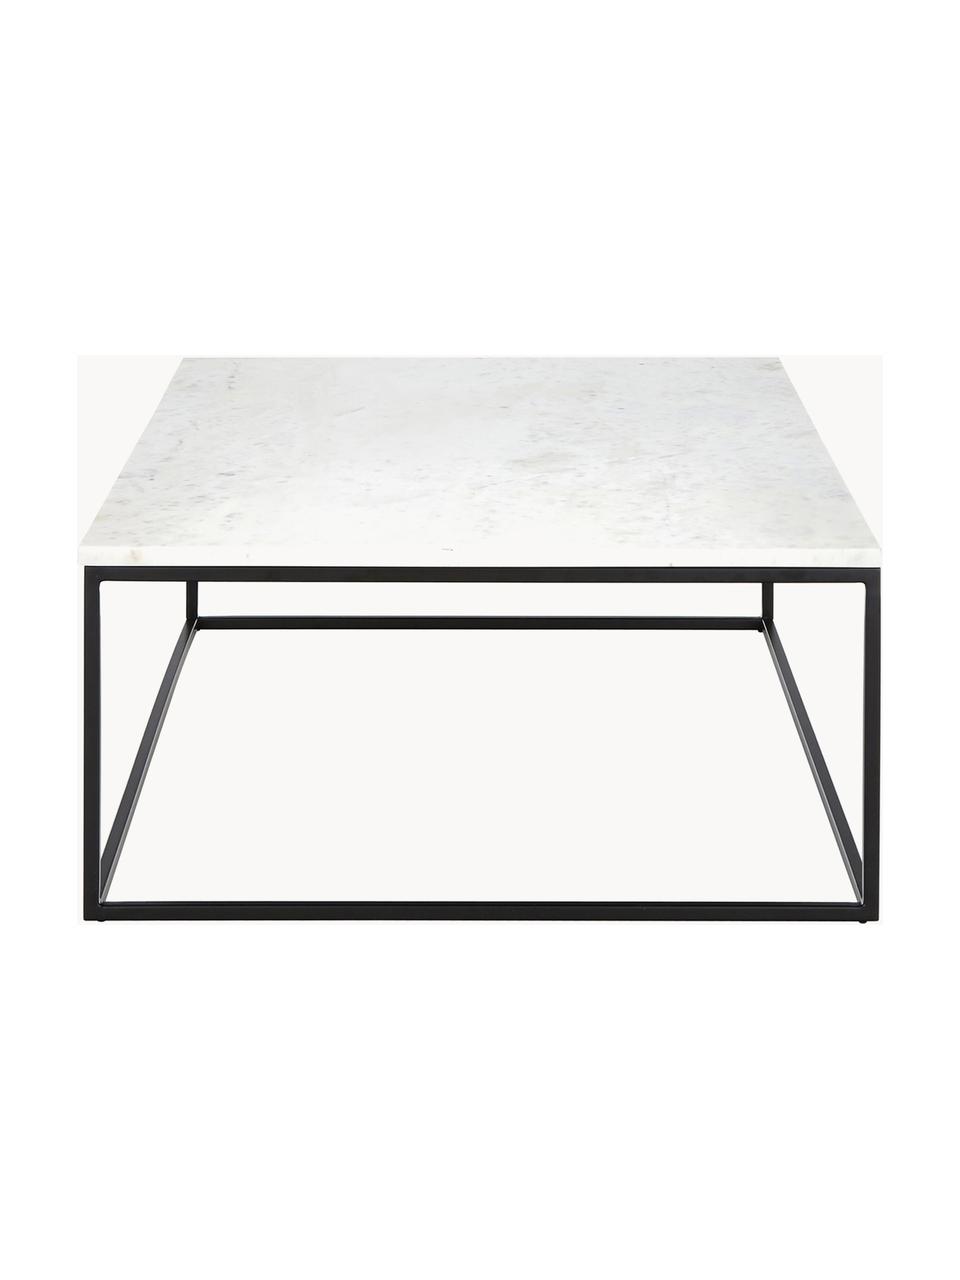 Großer Marmor-Couchtisch Alys, Tischplatte: Marmor, Gestell: Metall, pulverbeschichtet, Weiß marmoriert, Schwarz, B 120 x T 75 cm